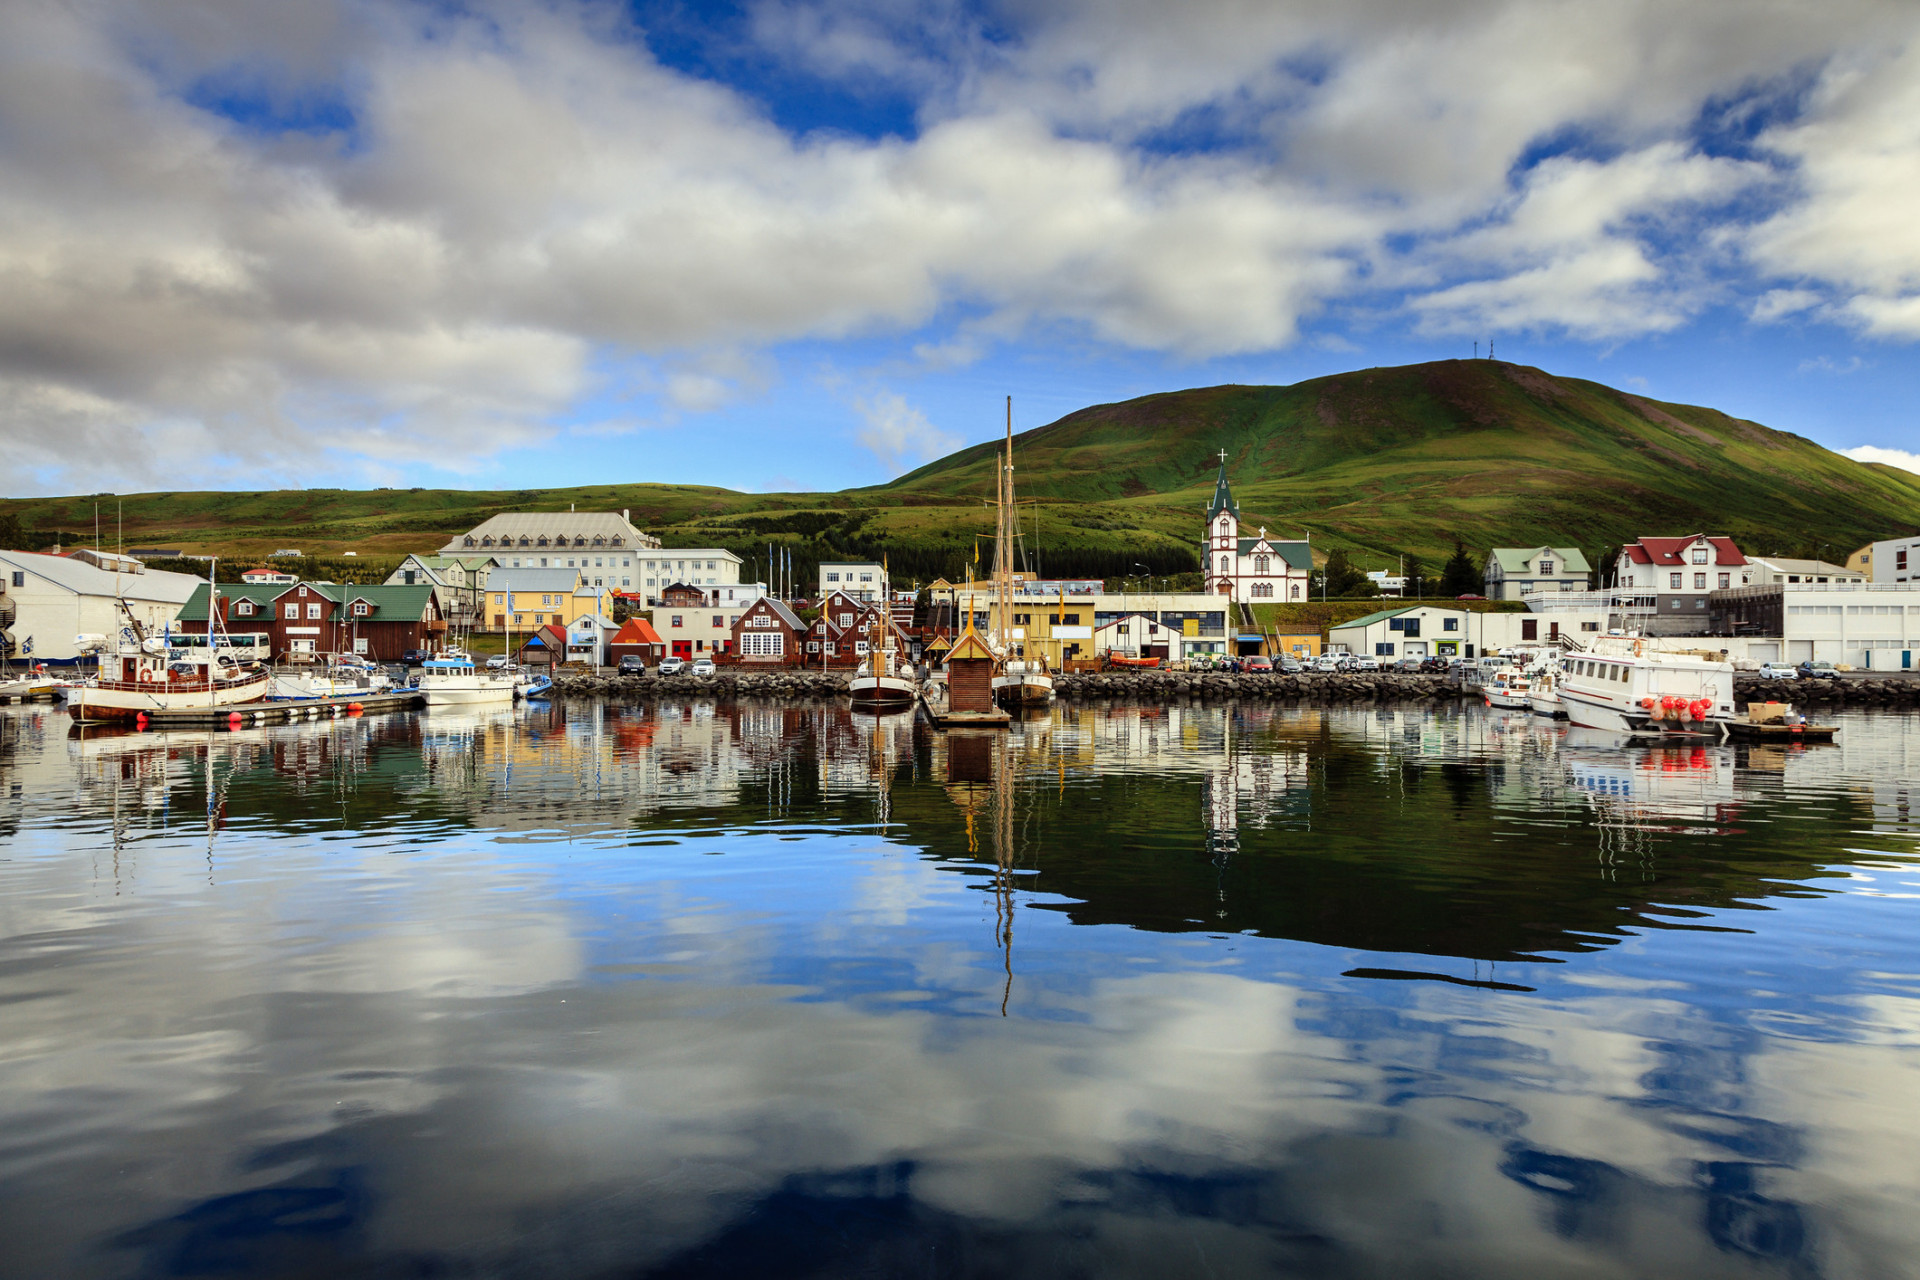 Blotti sur la côte nord de l'Islande, ce petit village de pêcheur est célèbre pour son église en bois, érigée en 1907.<p>Tu pourrais aussi aimer:<a href="https://www.starsinsider.com/n/481363?utm_source=msn.com&utm_medium=display&utm_campaign=referral_description&utm_content=277864v3"> Ils nous ont quittés en 2021</a></p>